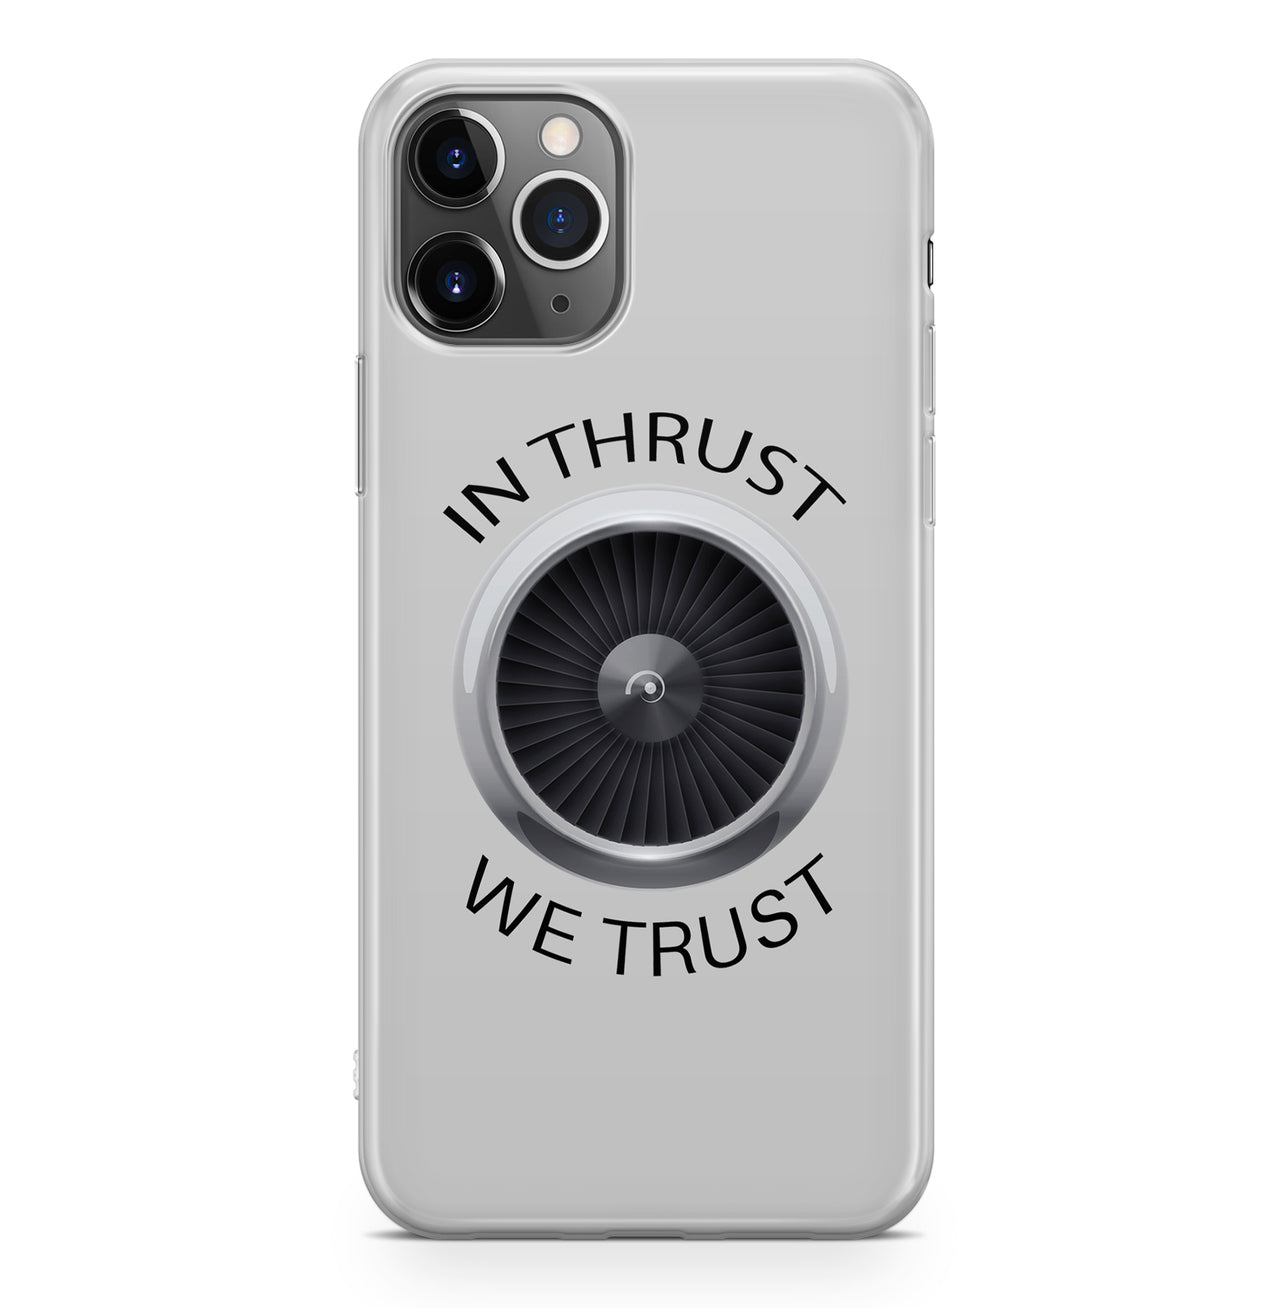 In Thrust We Trust Designed iPhone Cases